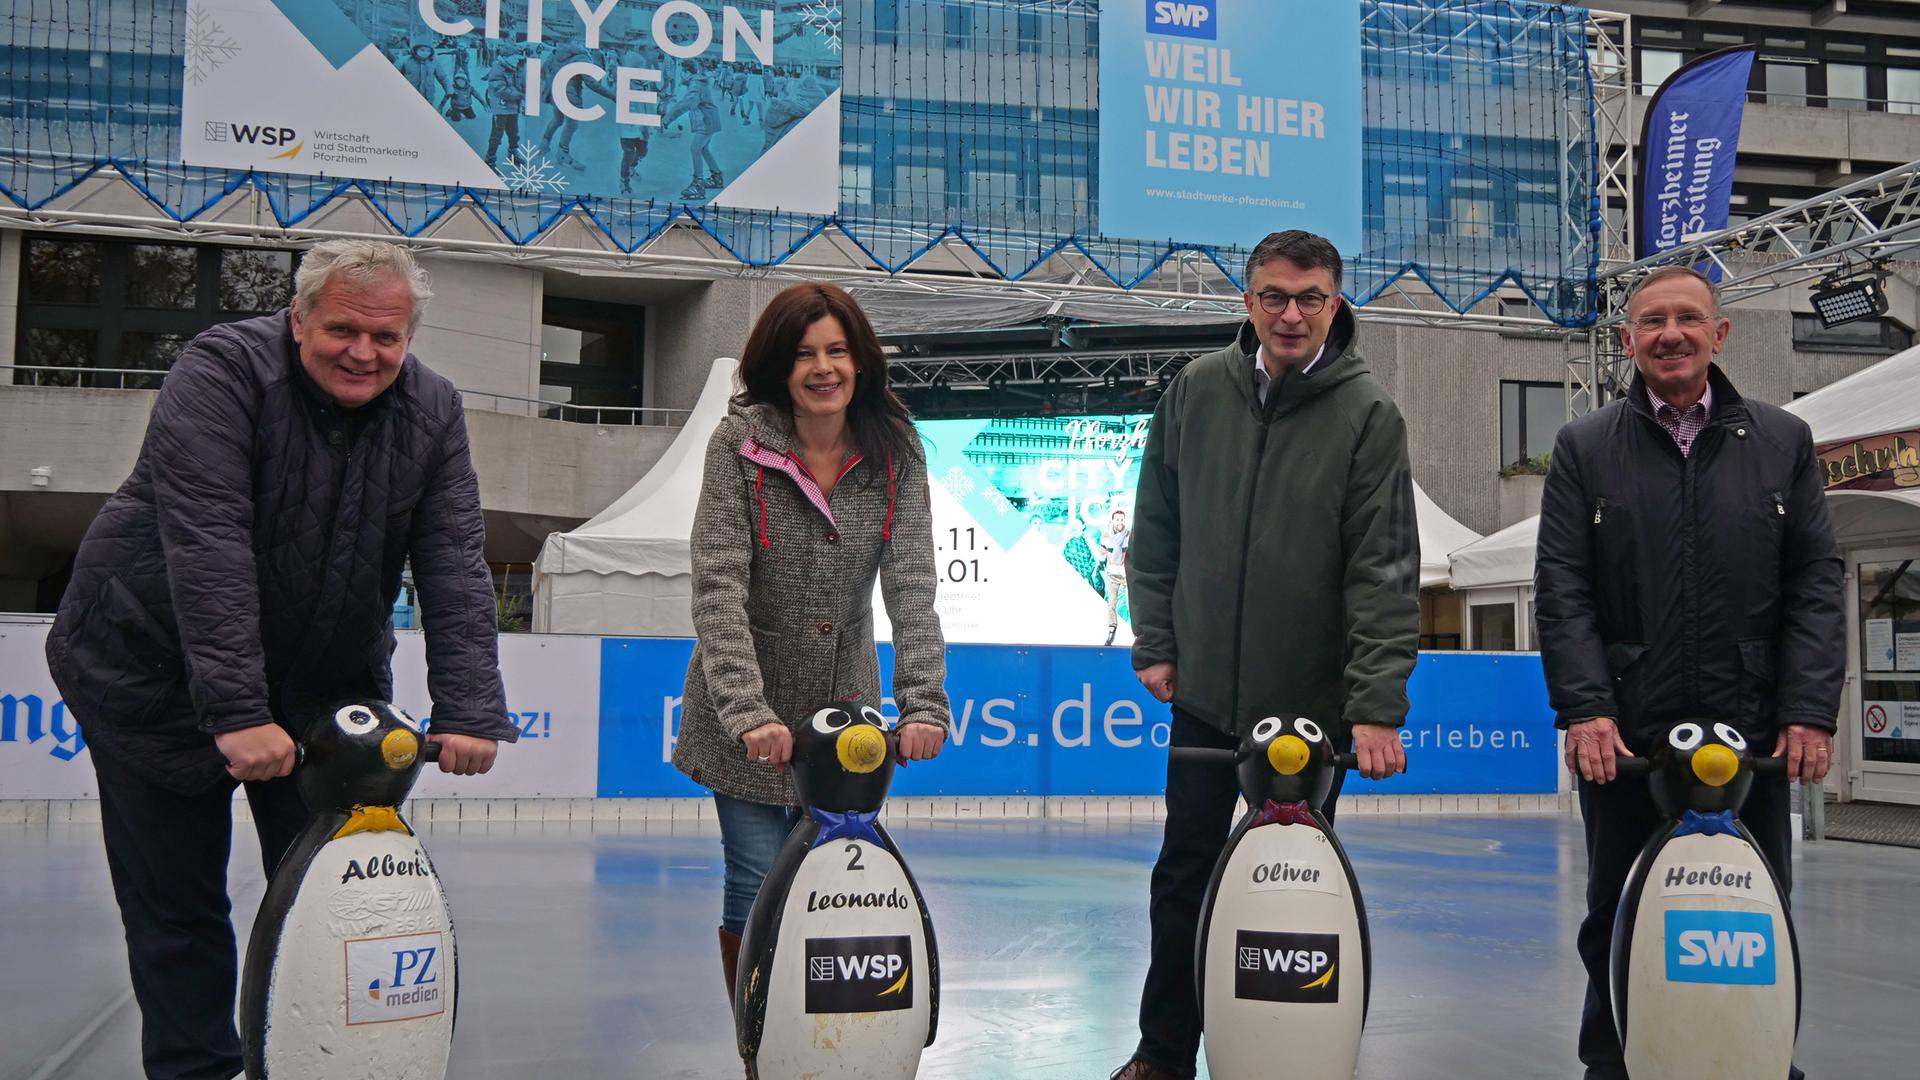 Bei einerm Pressegespräch am Dienstag geben sie den Startschuss zu „City on ice“: Frank Daudert, Annette De Gaetano, Oliver Reitz und Herbert Marquardt (von links)